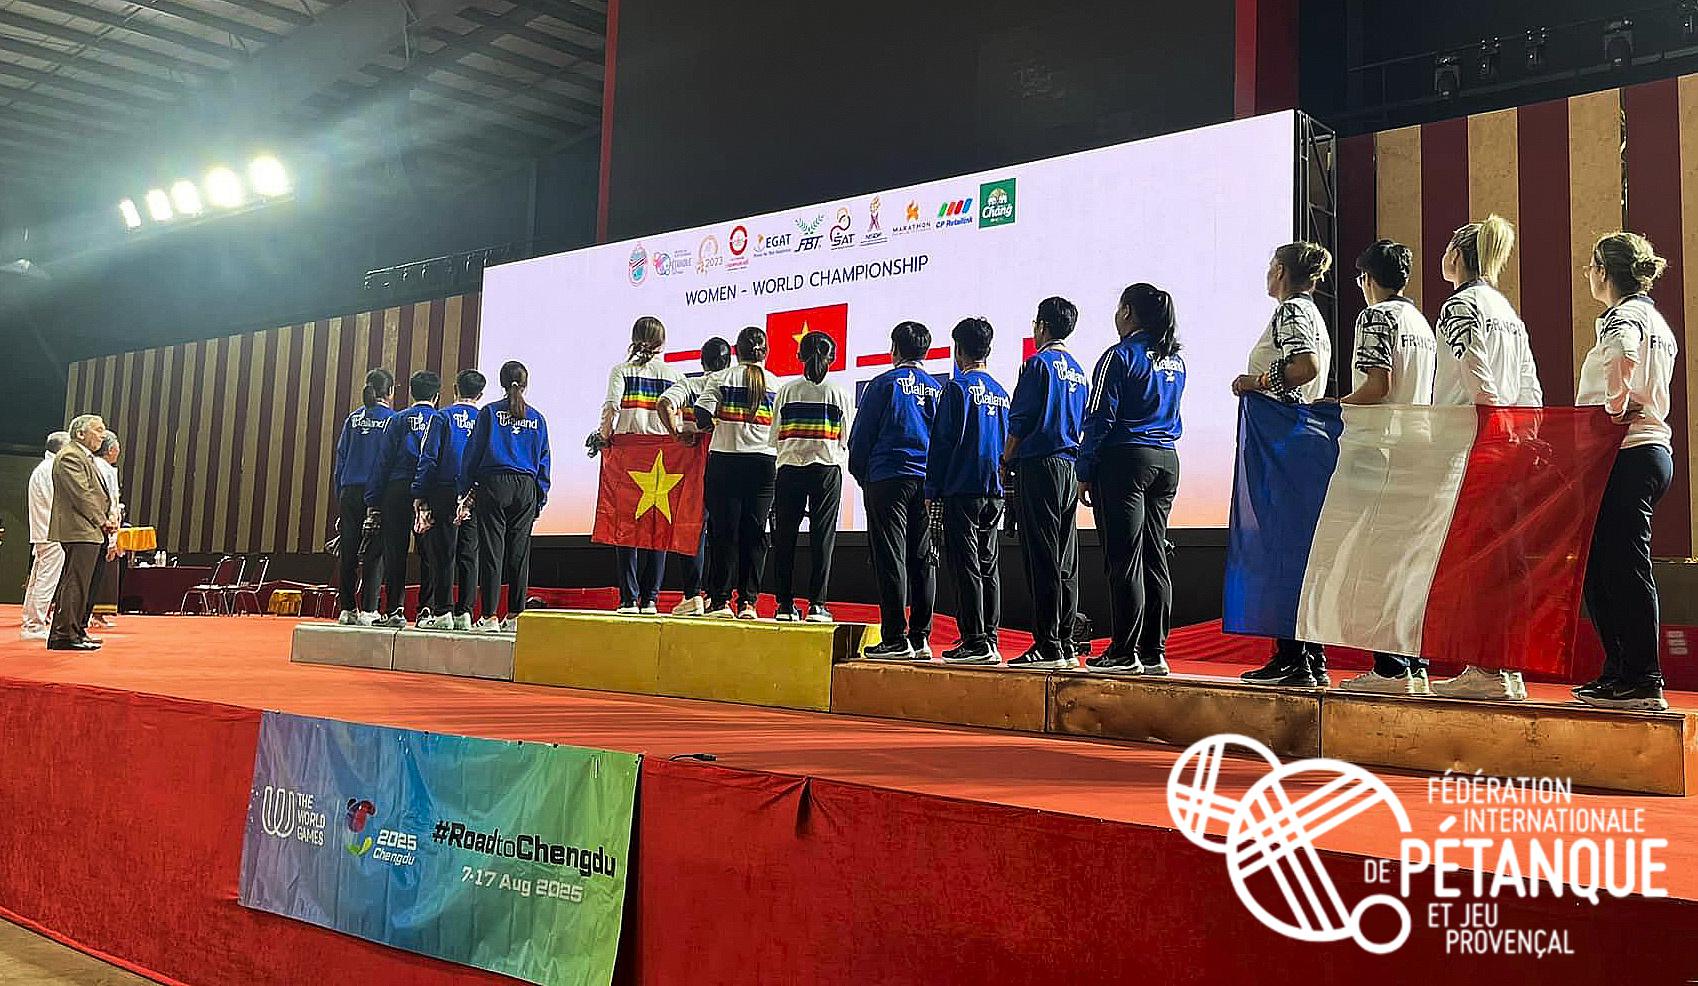 Championnats du Monde de pétanque féminin 2023, Victoire du Vietnam - Podium